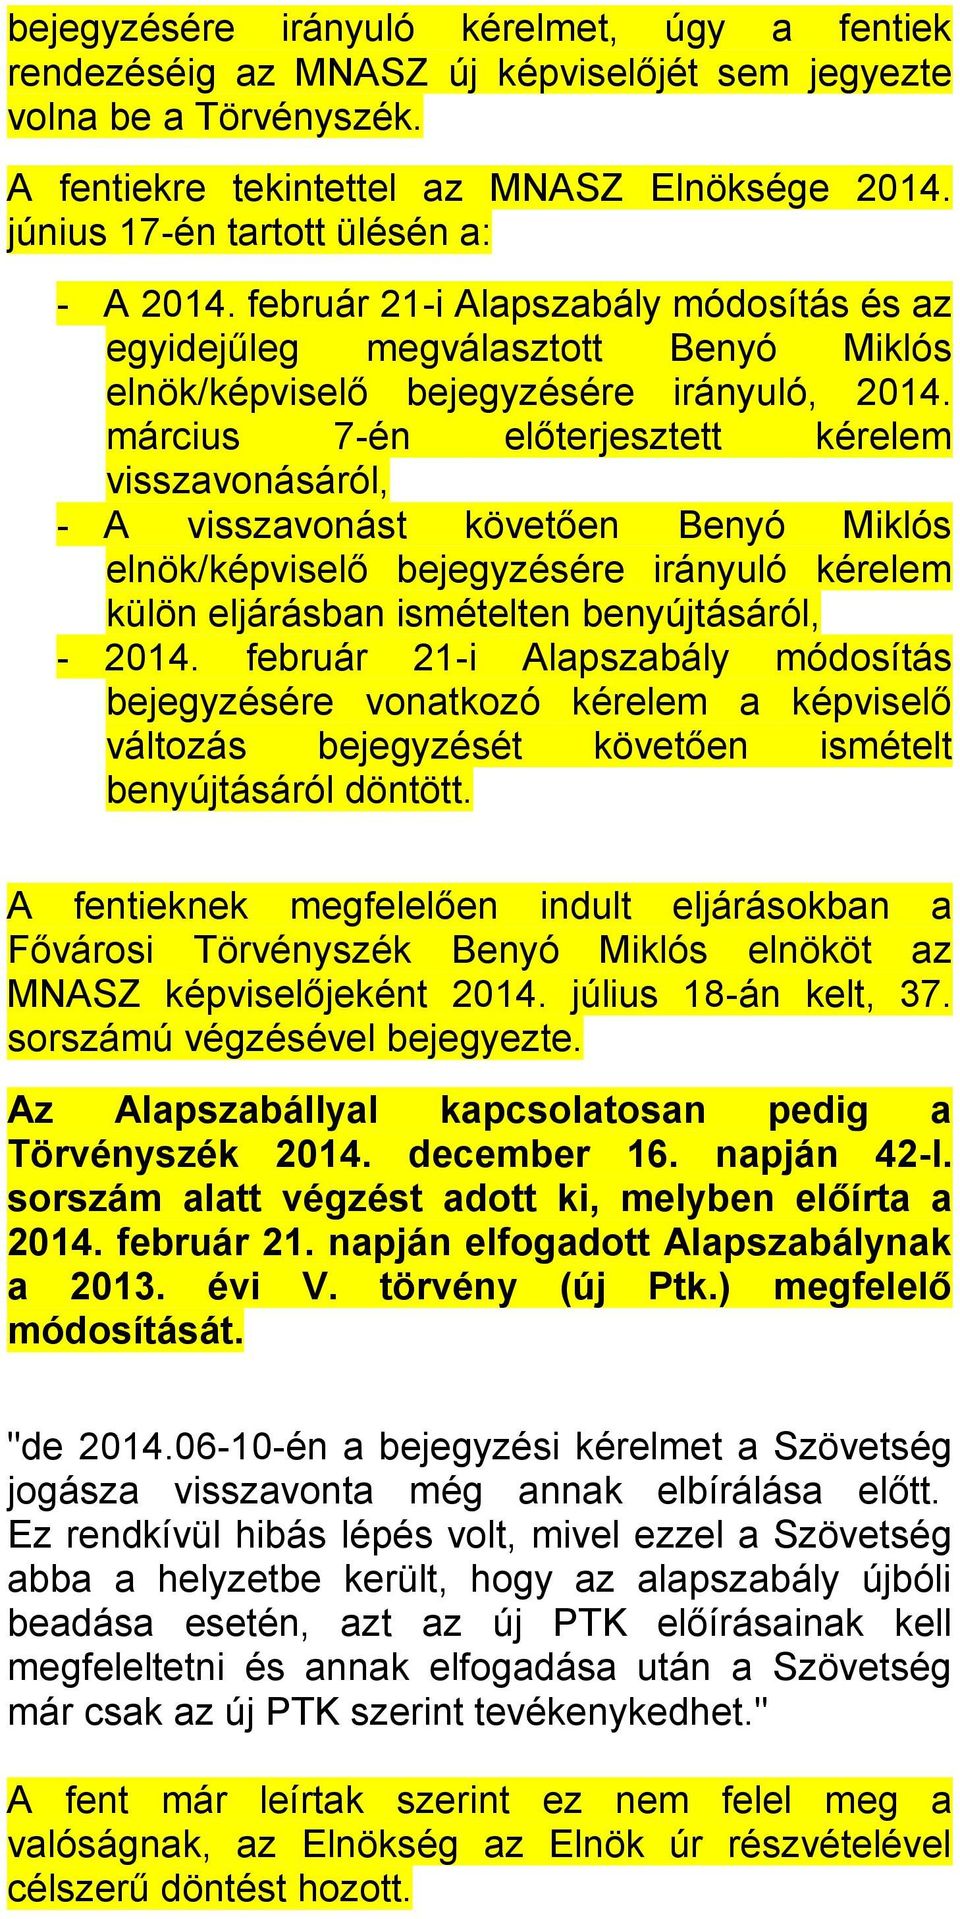 március 7-én előterjesztett kérelem visszavonásáról, - A visszavonást követően Benyó Miklós elnök/képviselő bejegyzésére irányuló kérelem külön eljárásban ismételten benyújtásáról, - 2014.